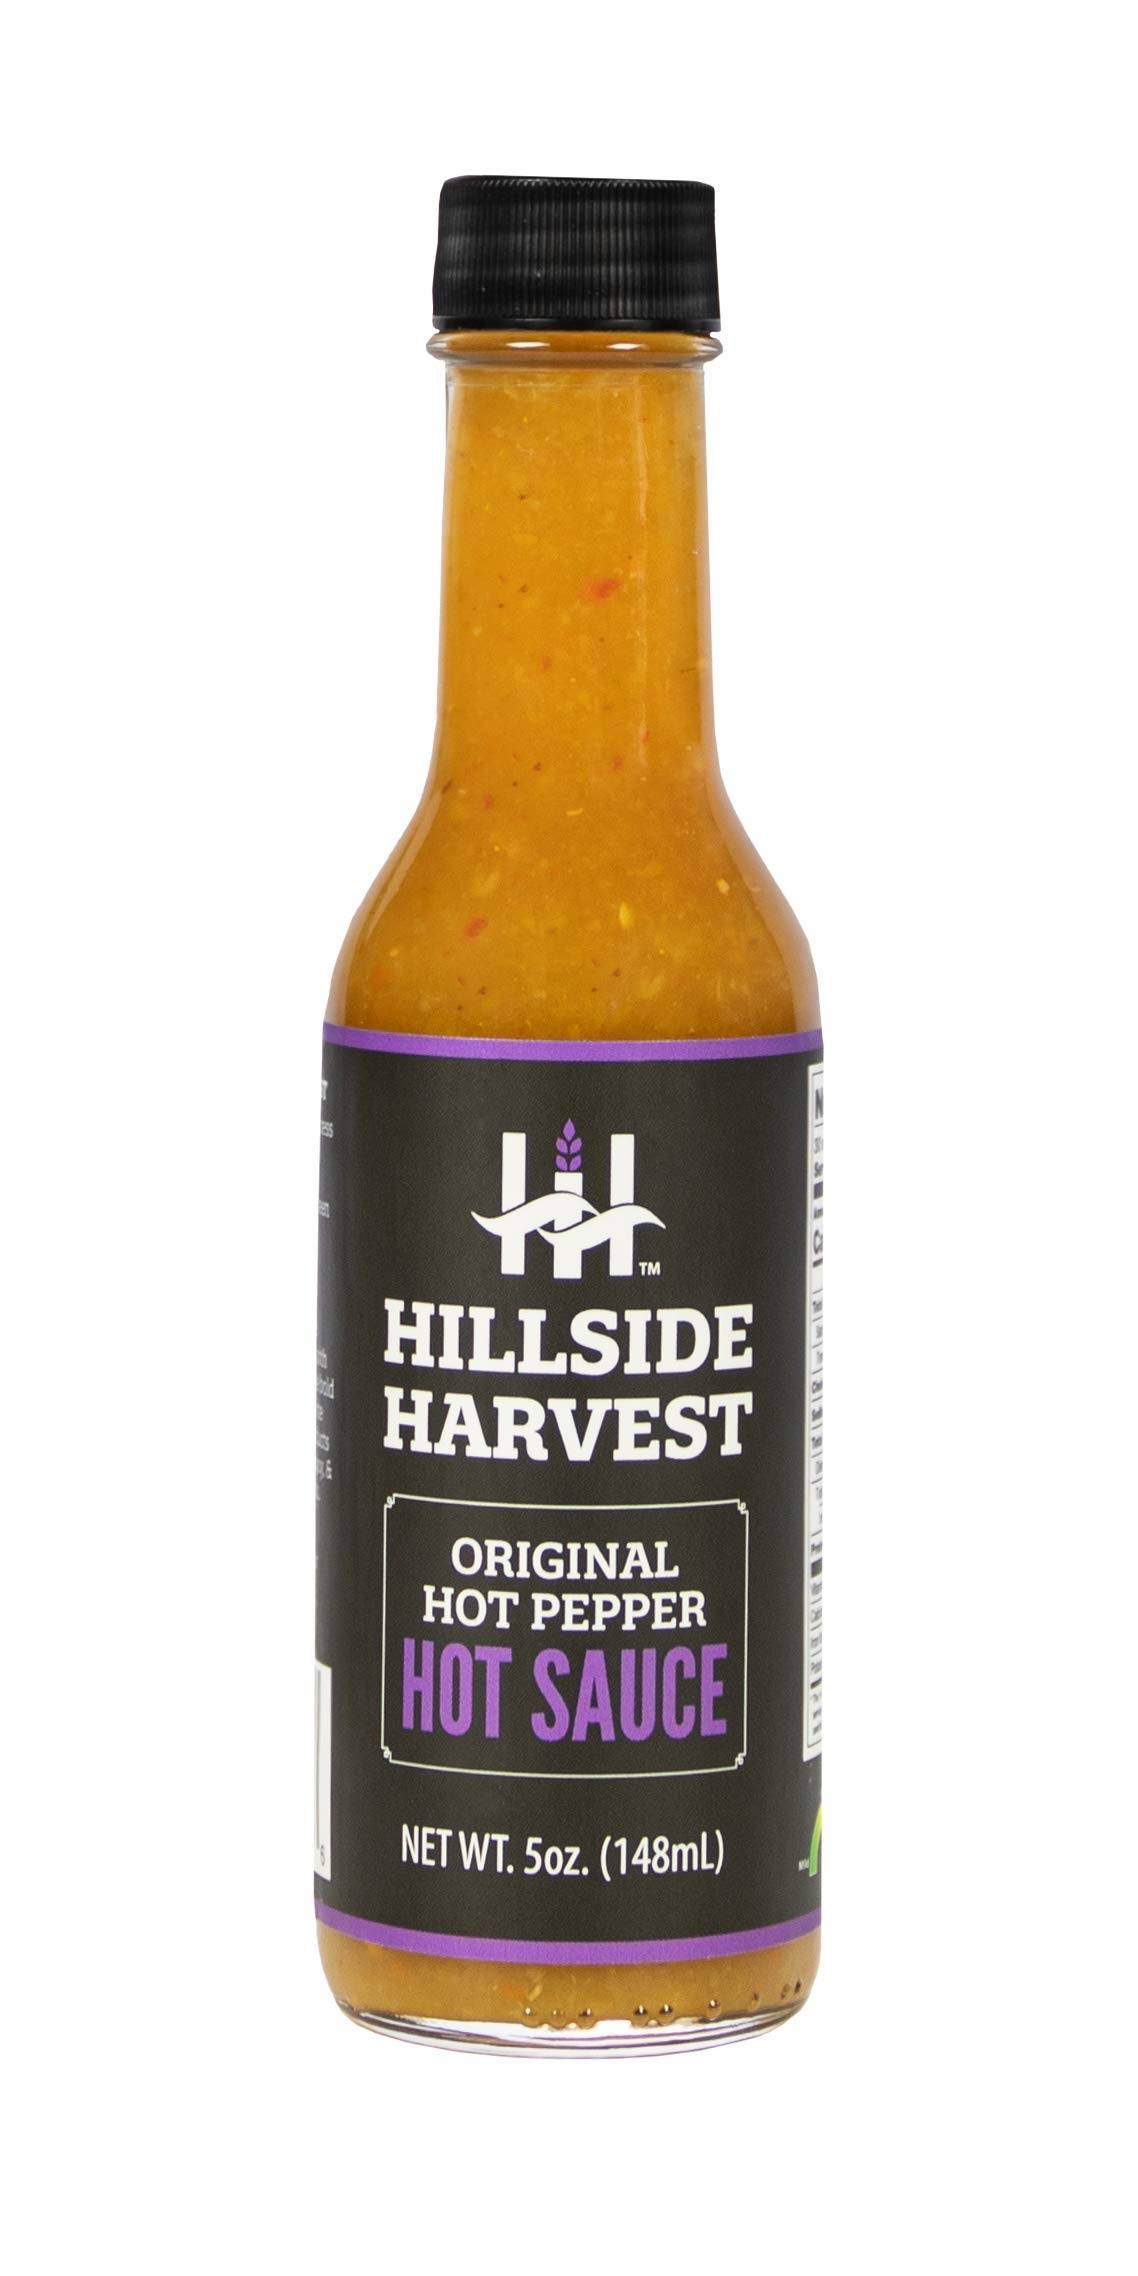 Hillside Harvest Original Hot Pepper Hot Sauce, Gourmet, Handcrafted,